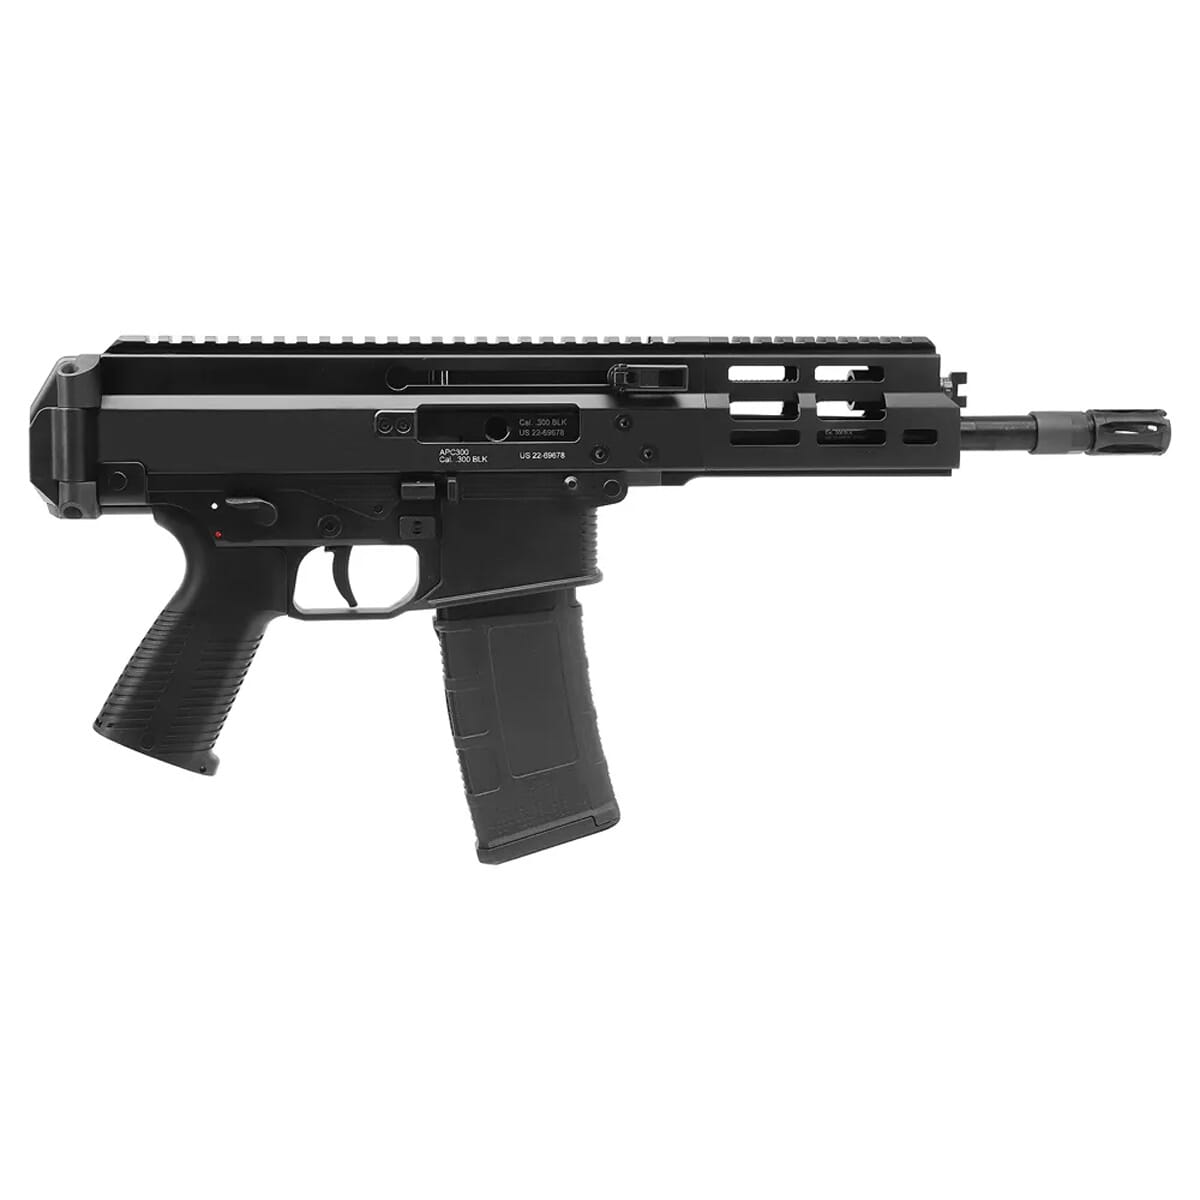 B&T APC300 PRO .300 BLK Black Pistol BT-361660